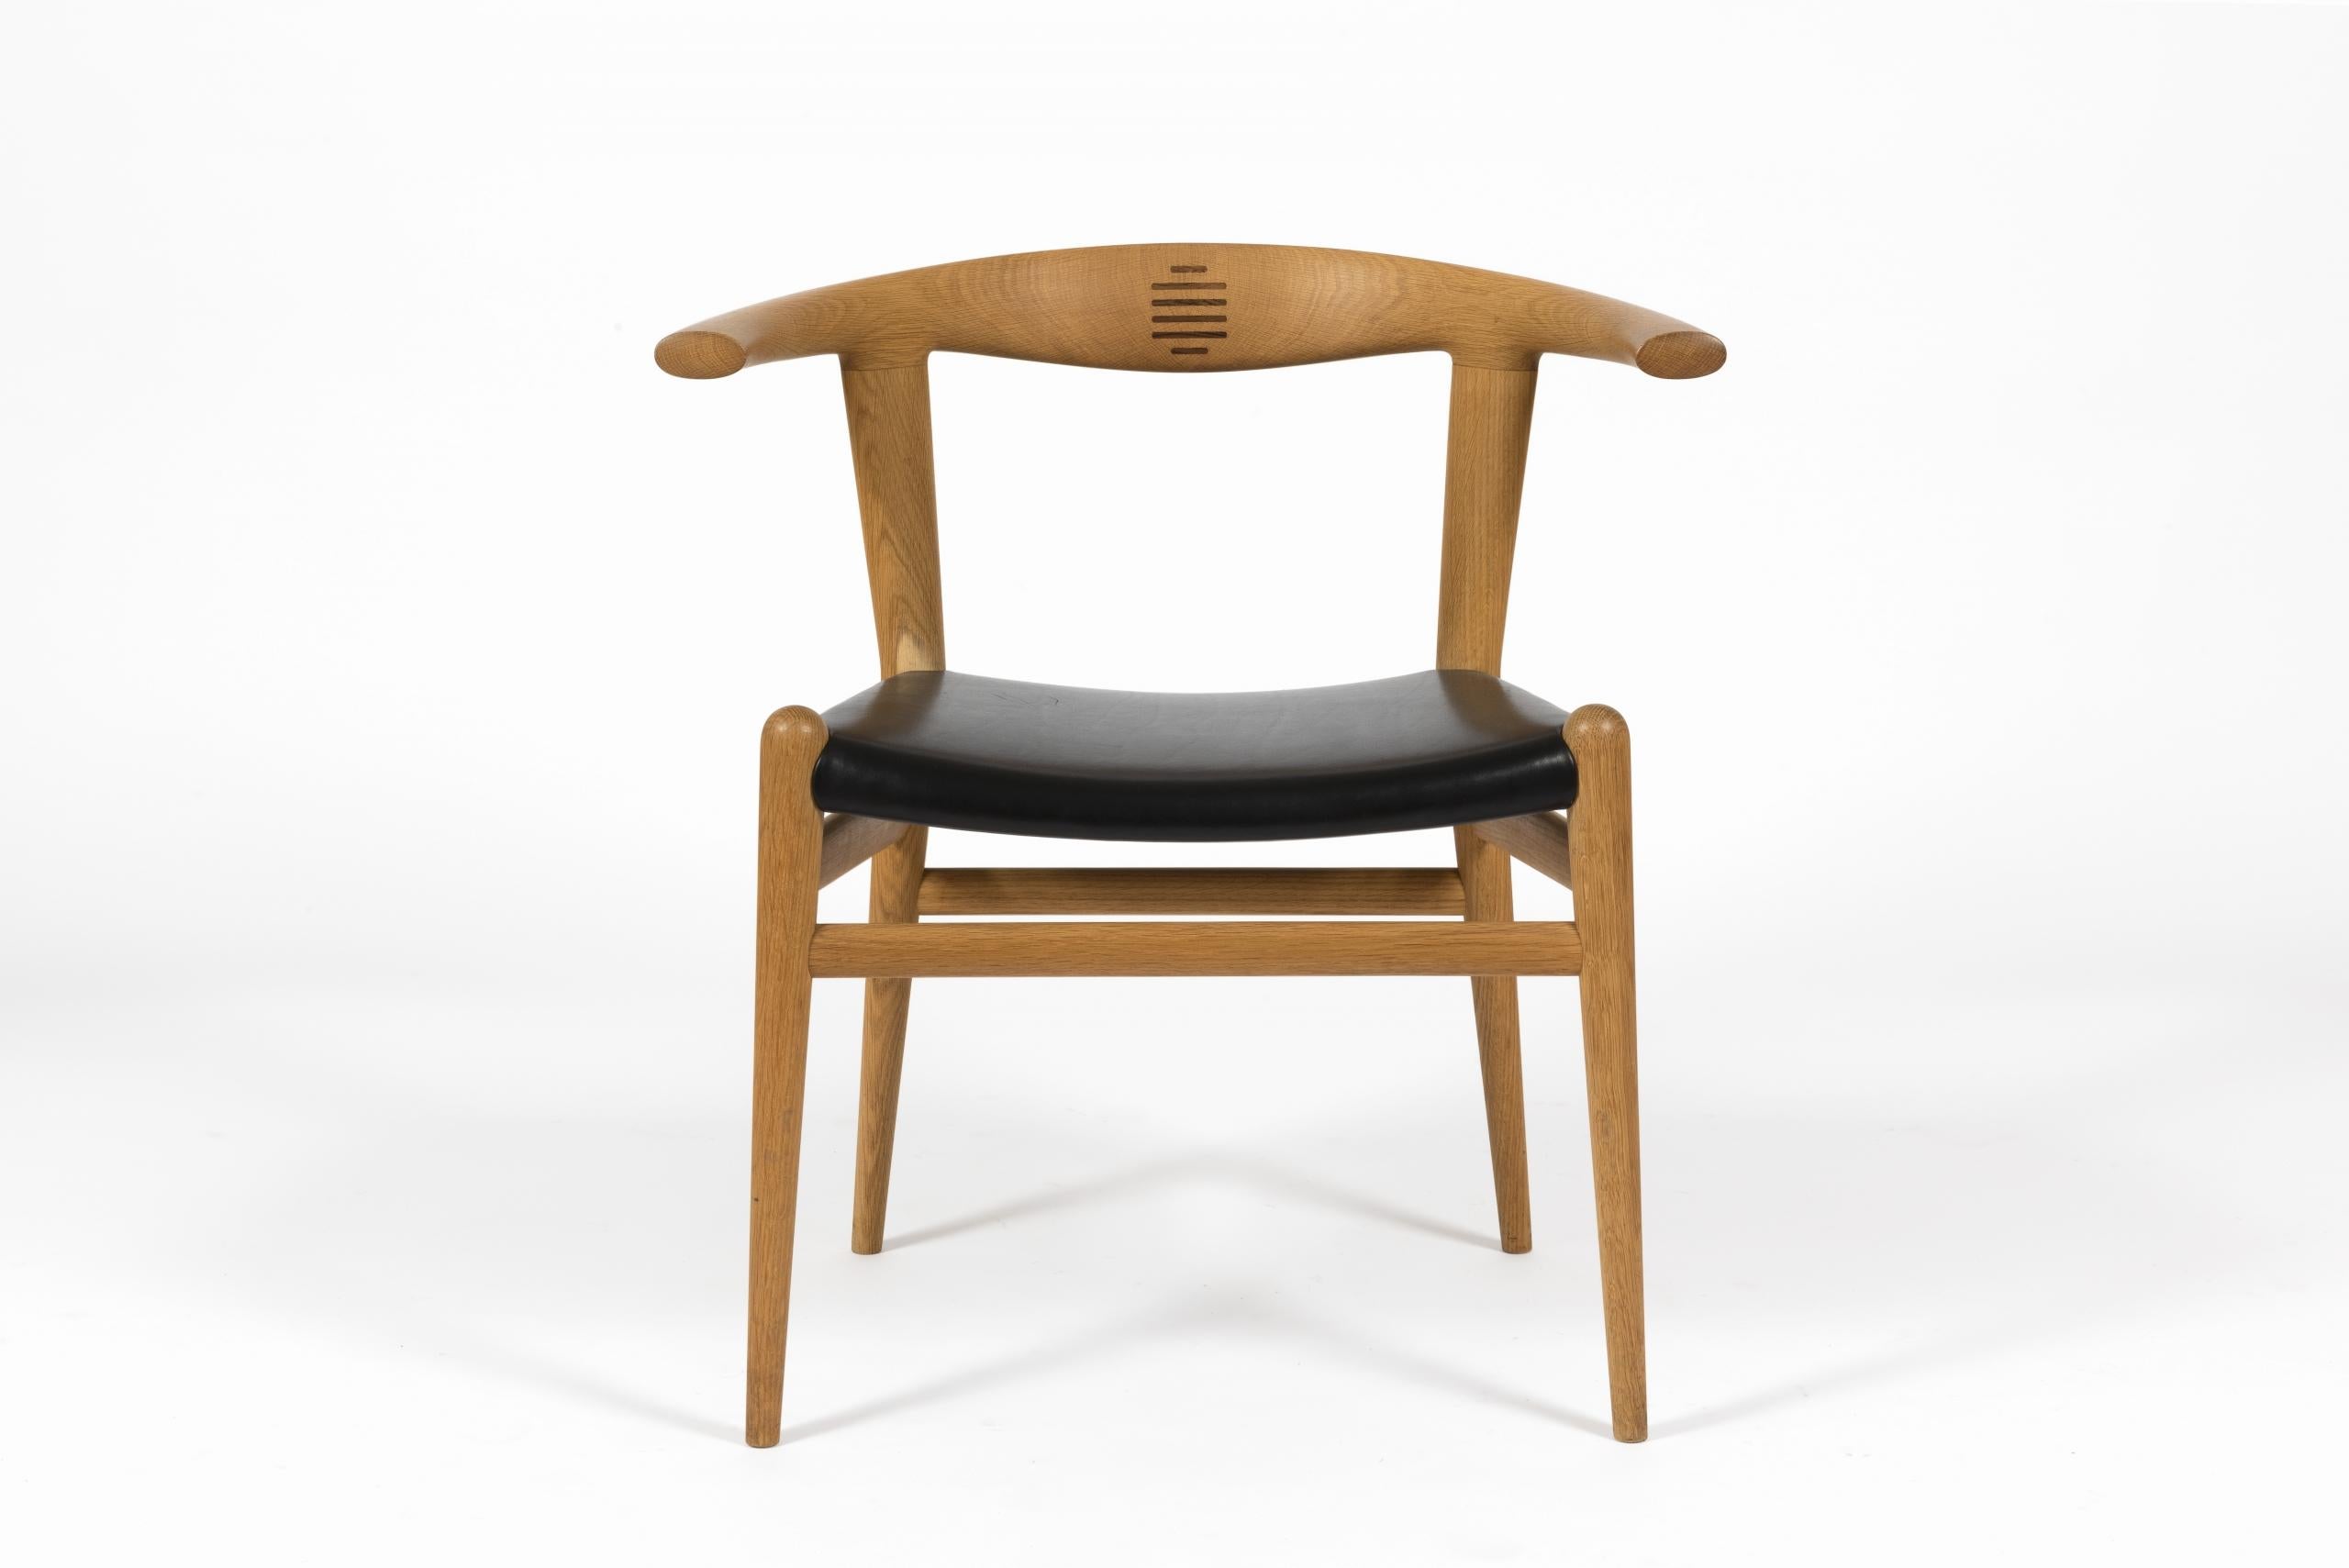 Paire de chaises ‘Bull Chair’, modèle PP-518 de Hans J. Wegner pour PP Møbler, 1961.

Structure en chêne massif avec incrustation sur le dossier en palissandre et siège recouvert de cuir noir.